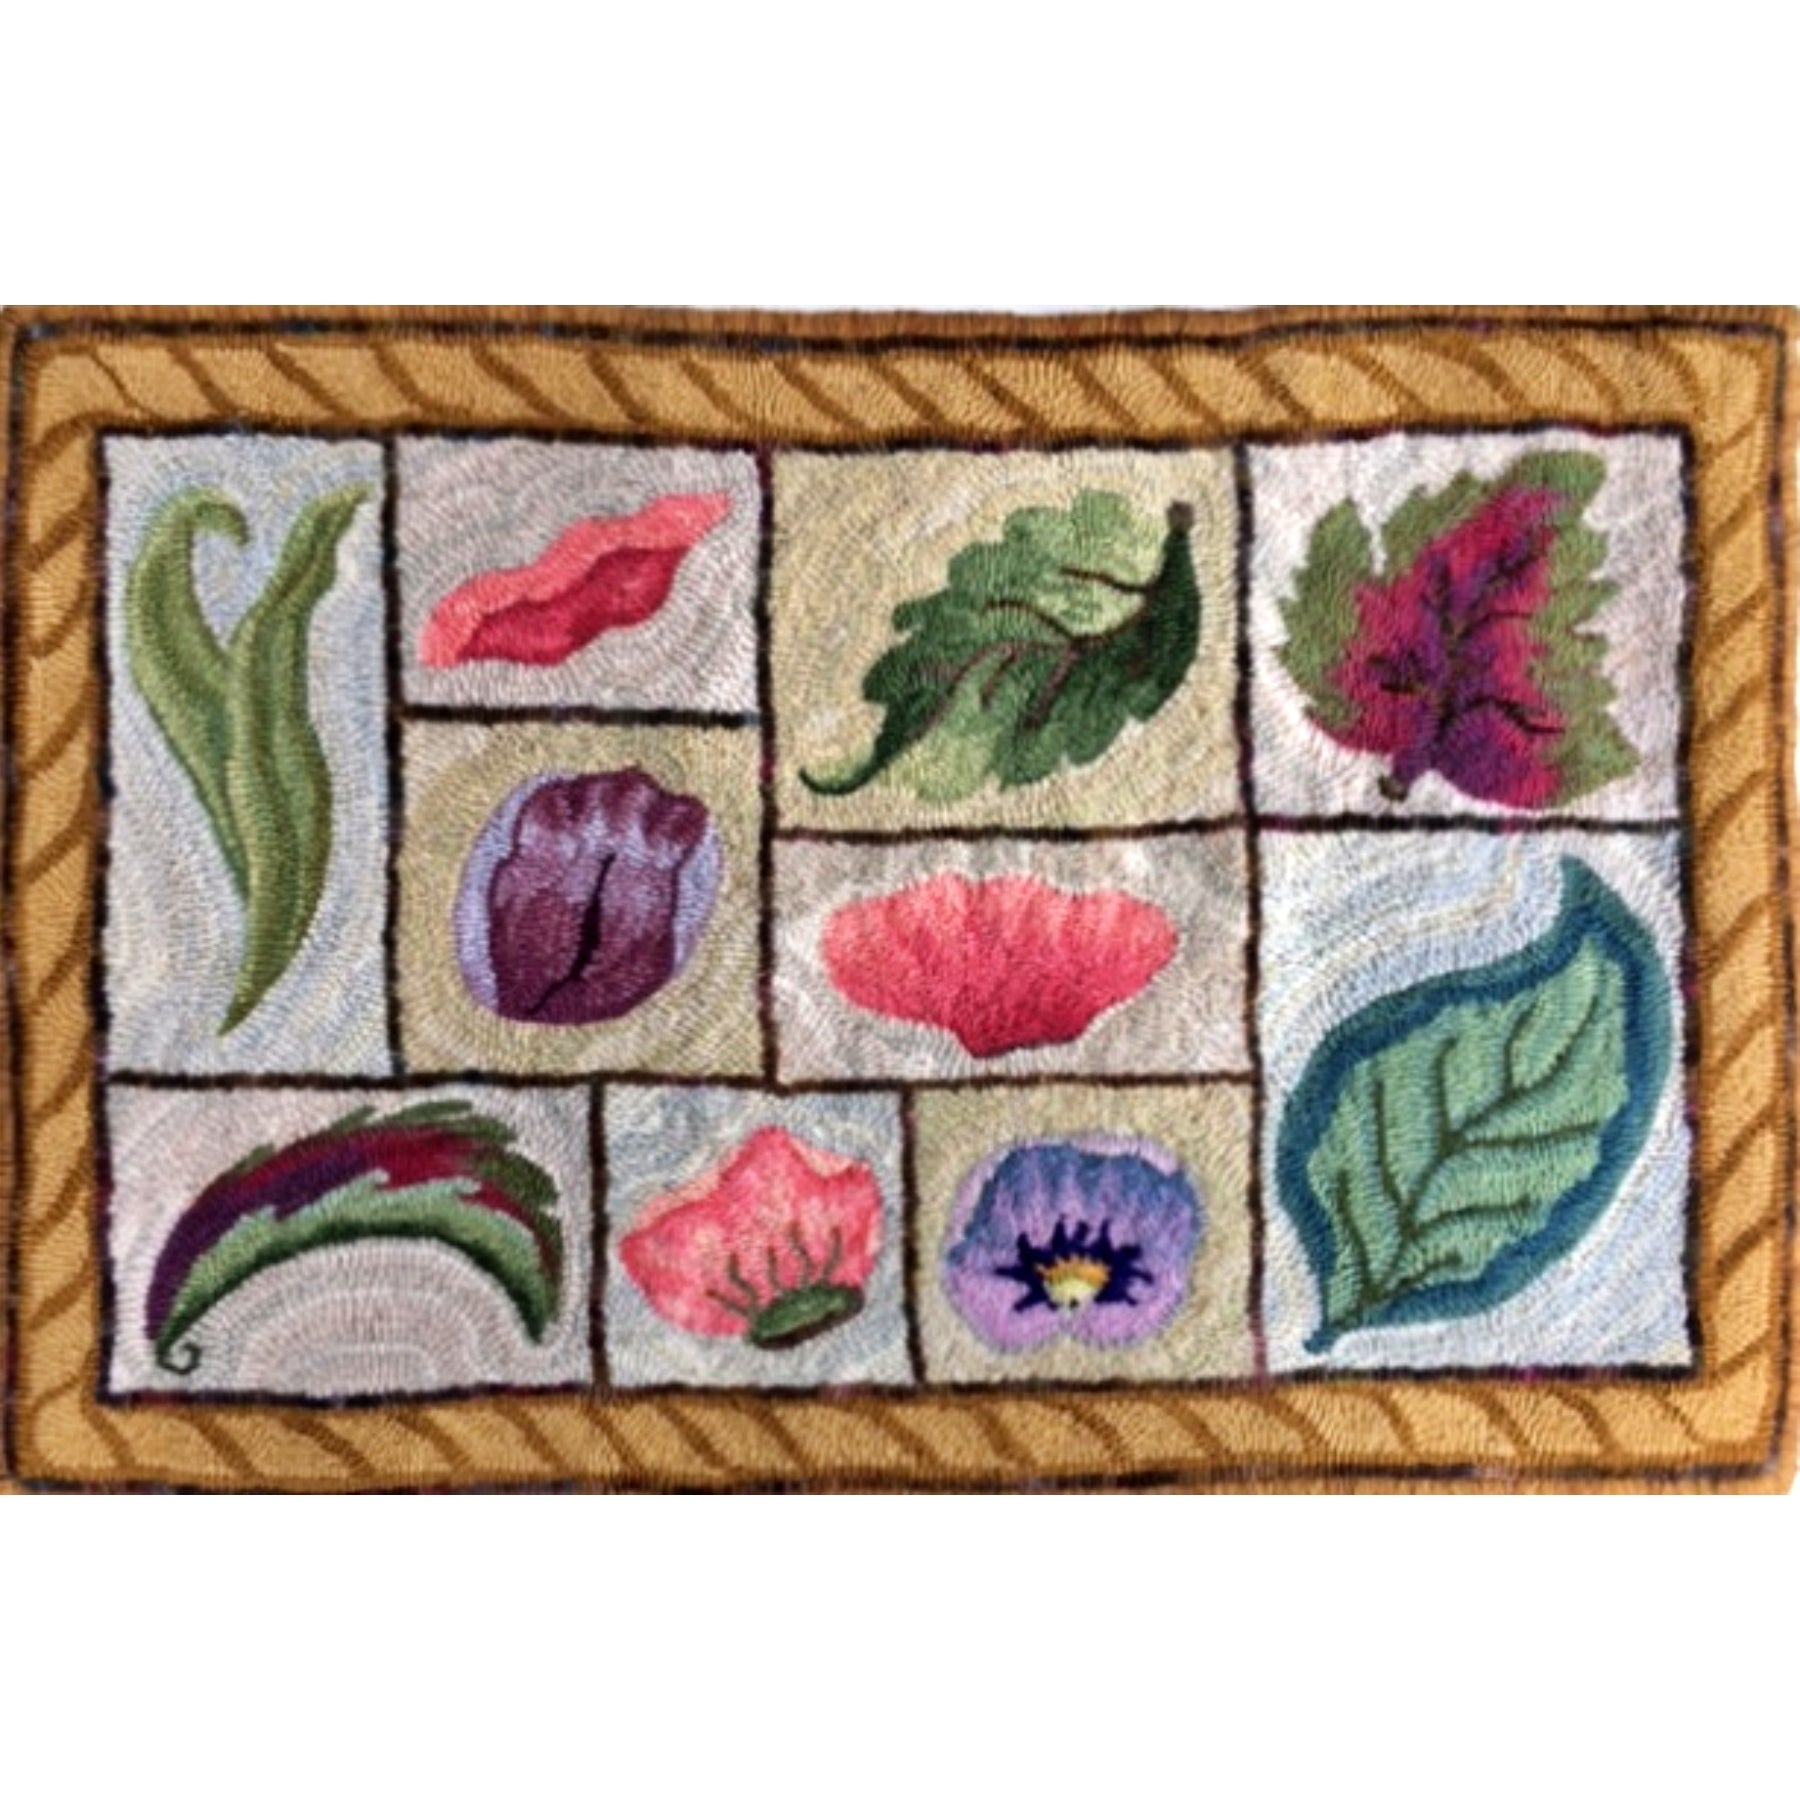 Petal & Leaf Sampler, rug hooked by Linda Cooney